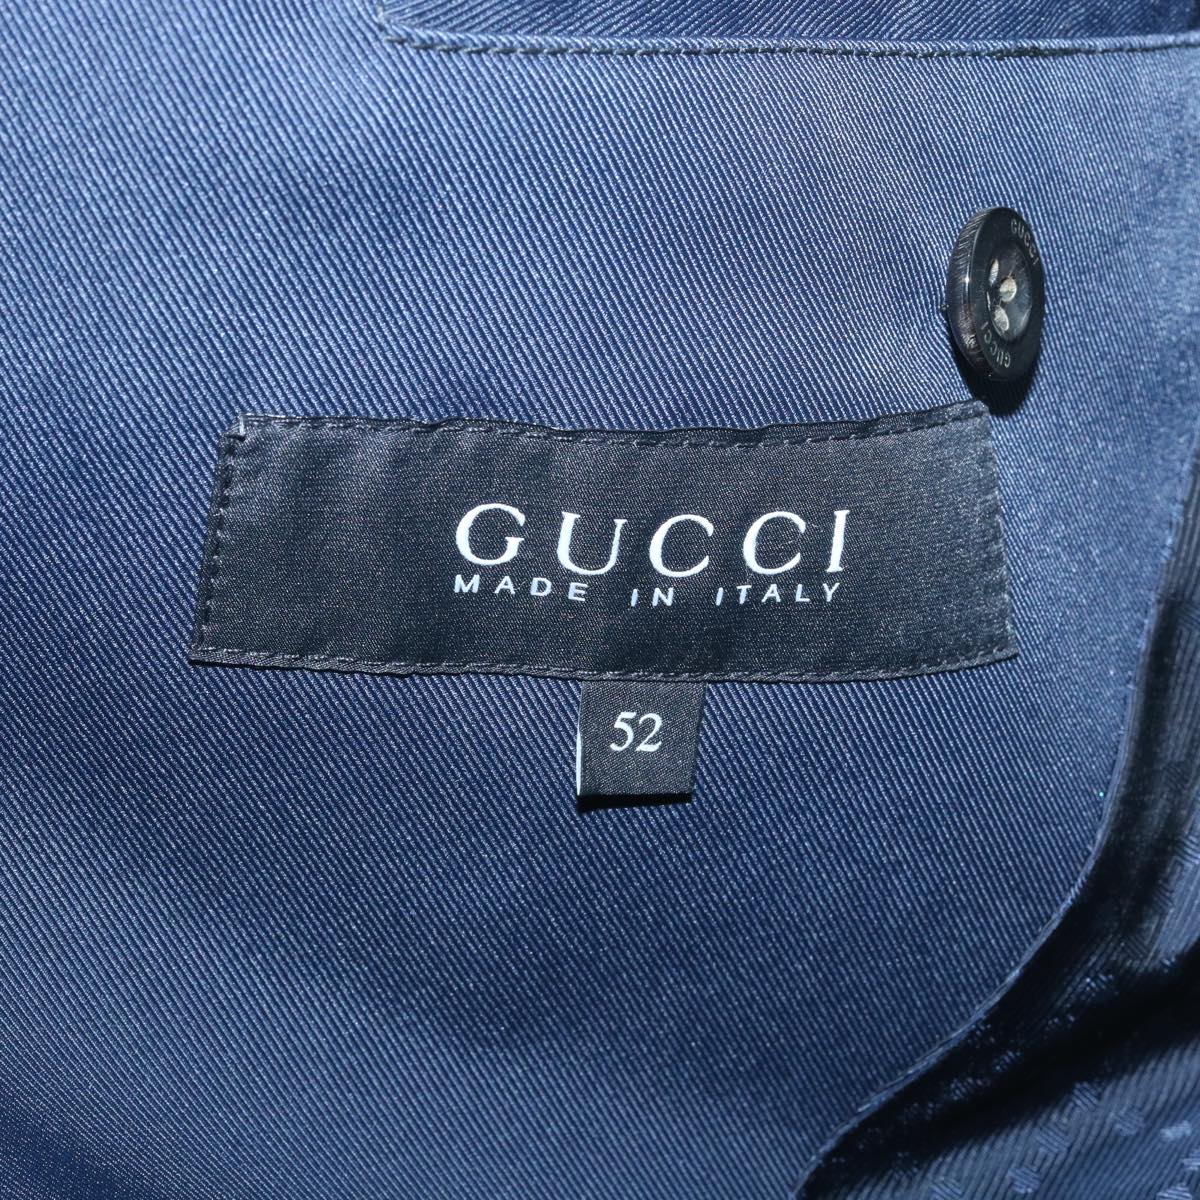 GUCCI Jacket Plaid Blue Black Auth 37056